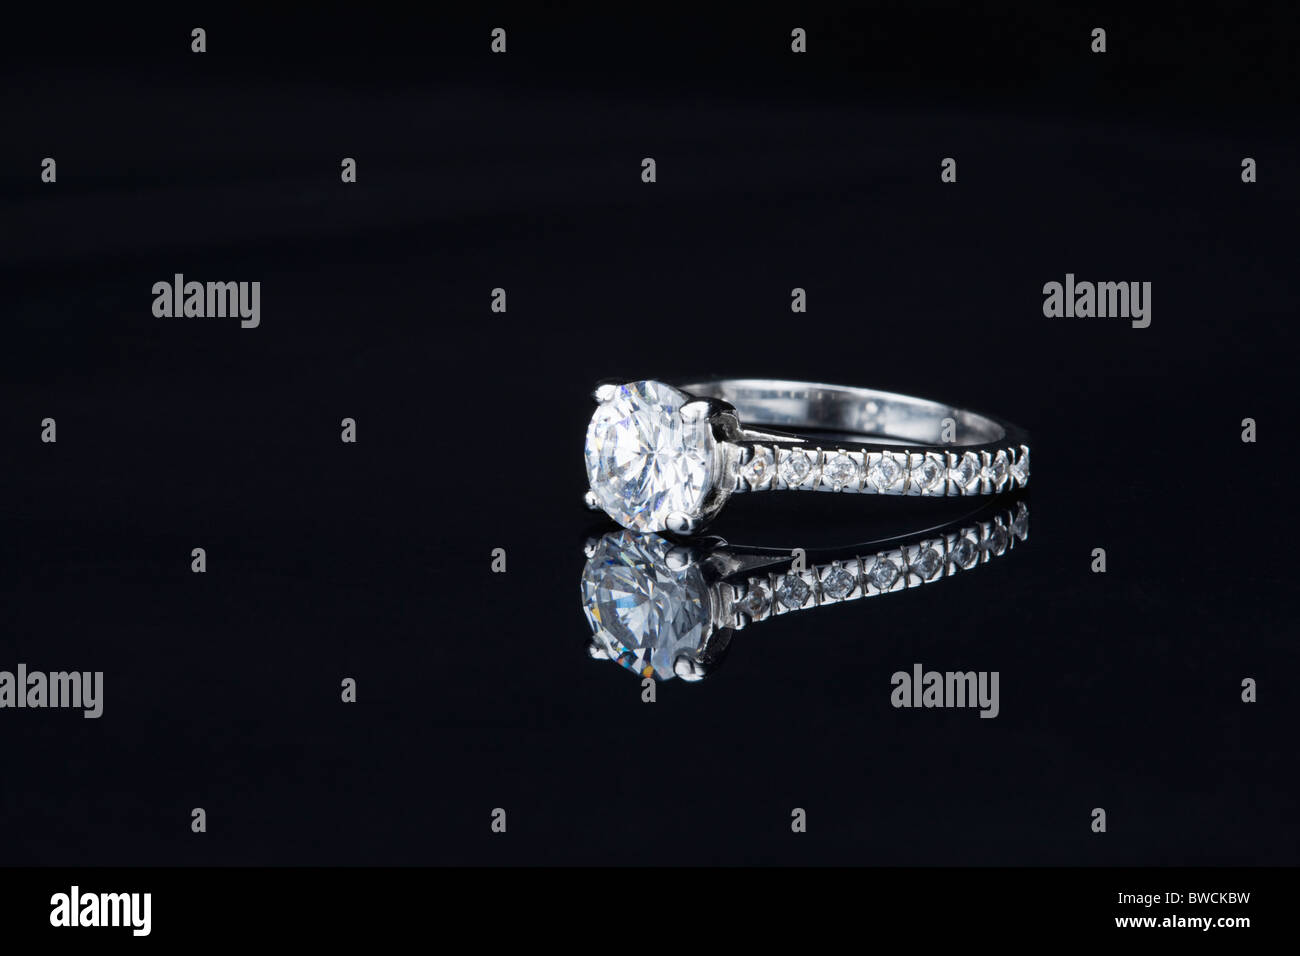 États-unis, Illinois, Metamora, anneau de diamant sur fond noir Banque D'Images